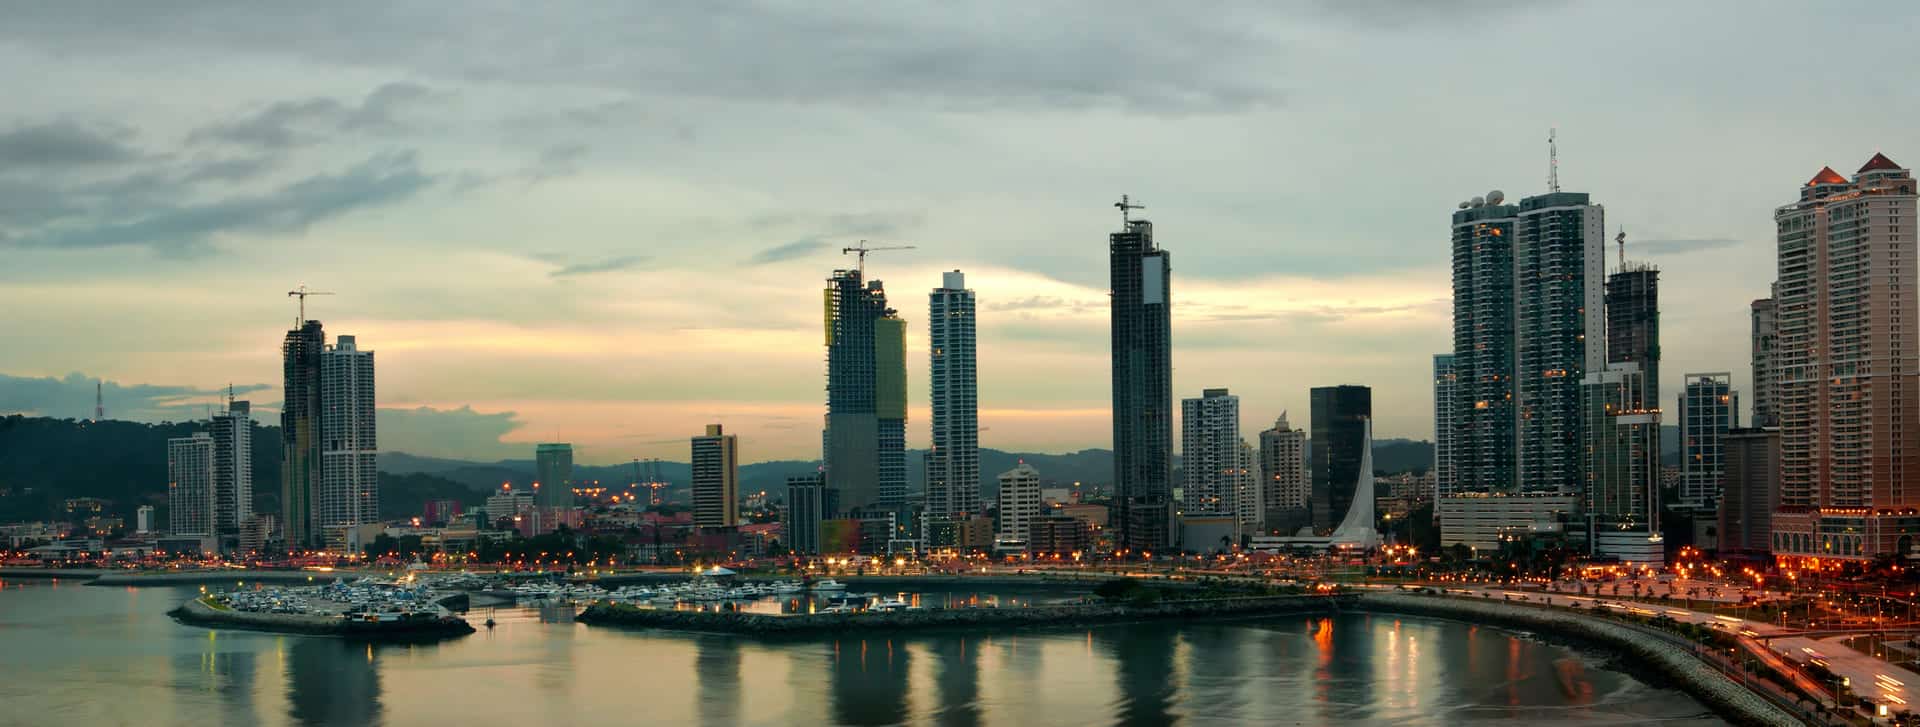 Panamá vs. Colombia para Expatriados